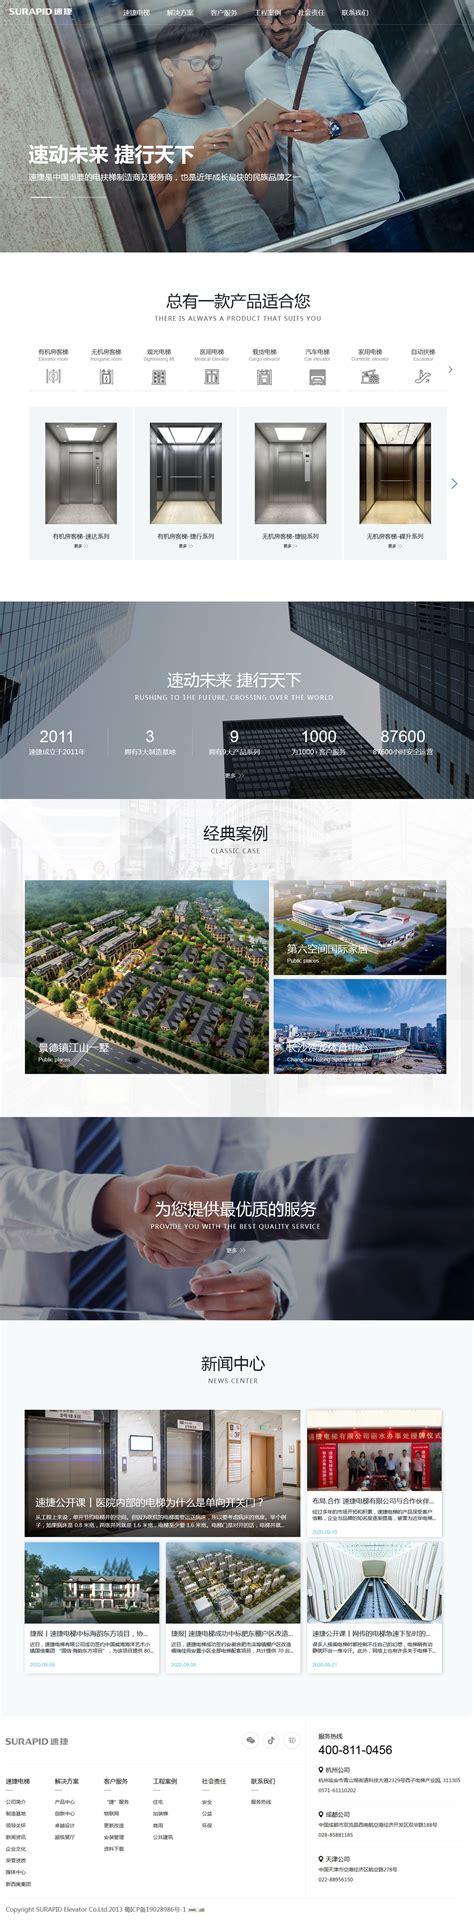 速捷电梯-杭州网站建设|高端网站设计|网站制作开发|专业做网站公司-巴零互联